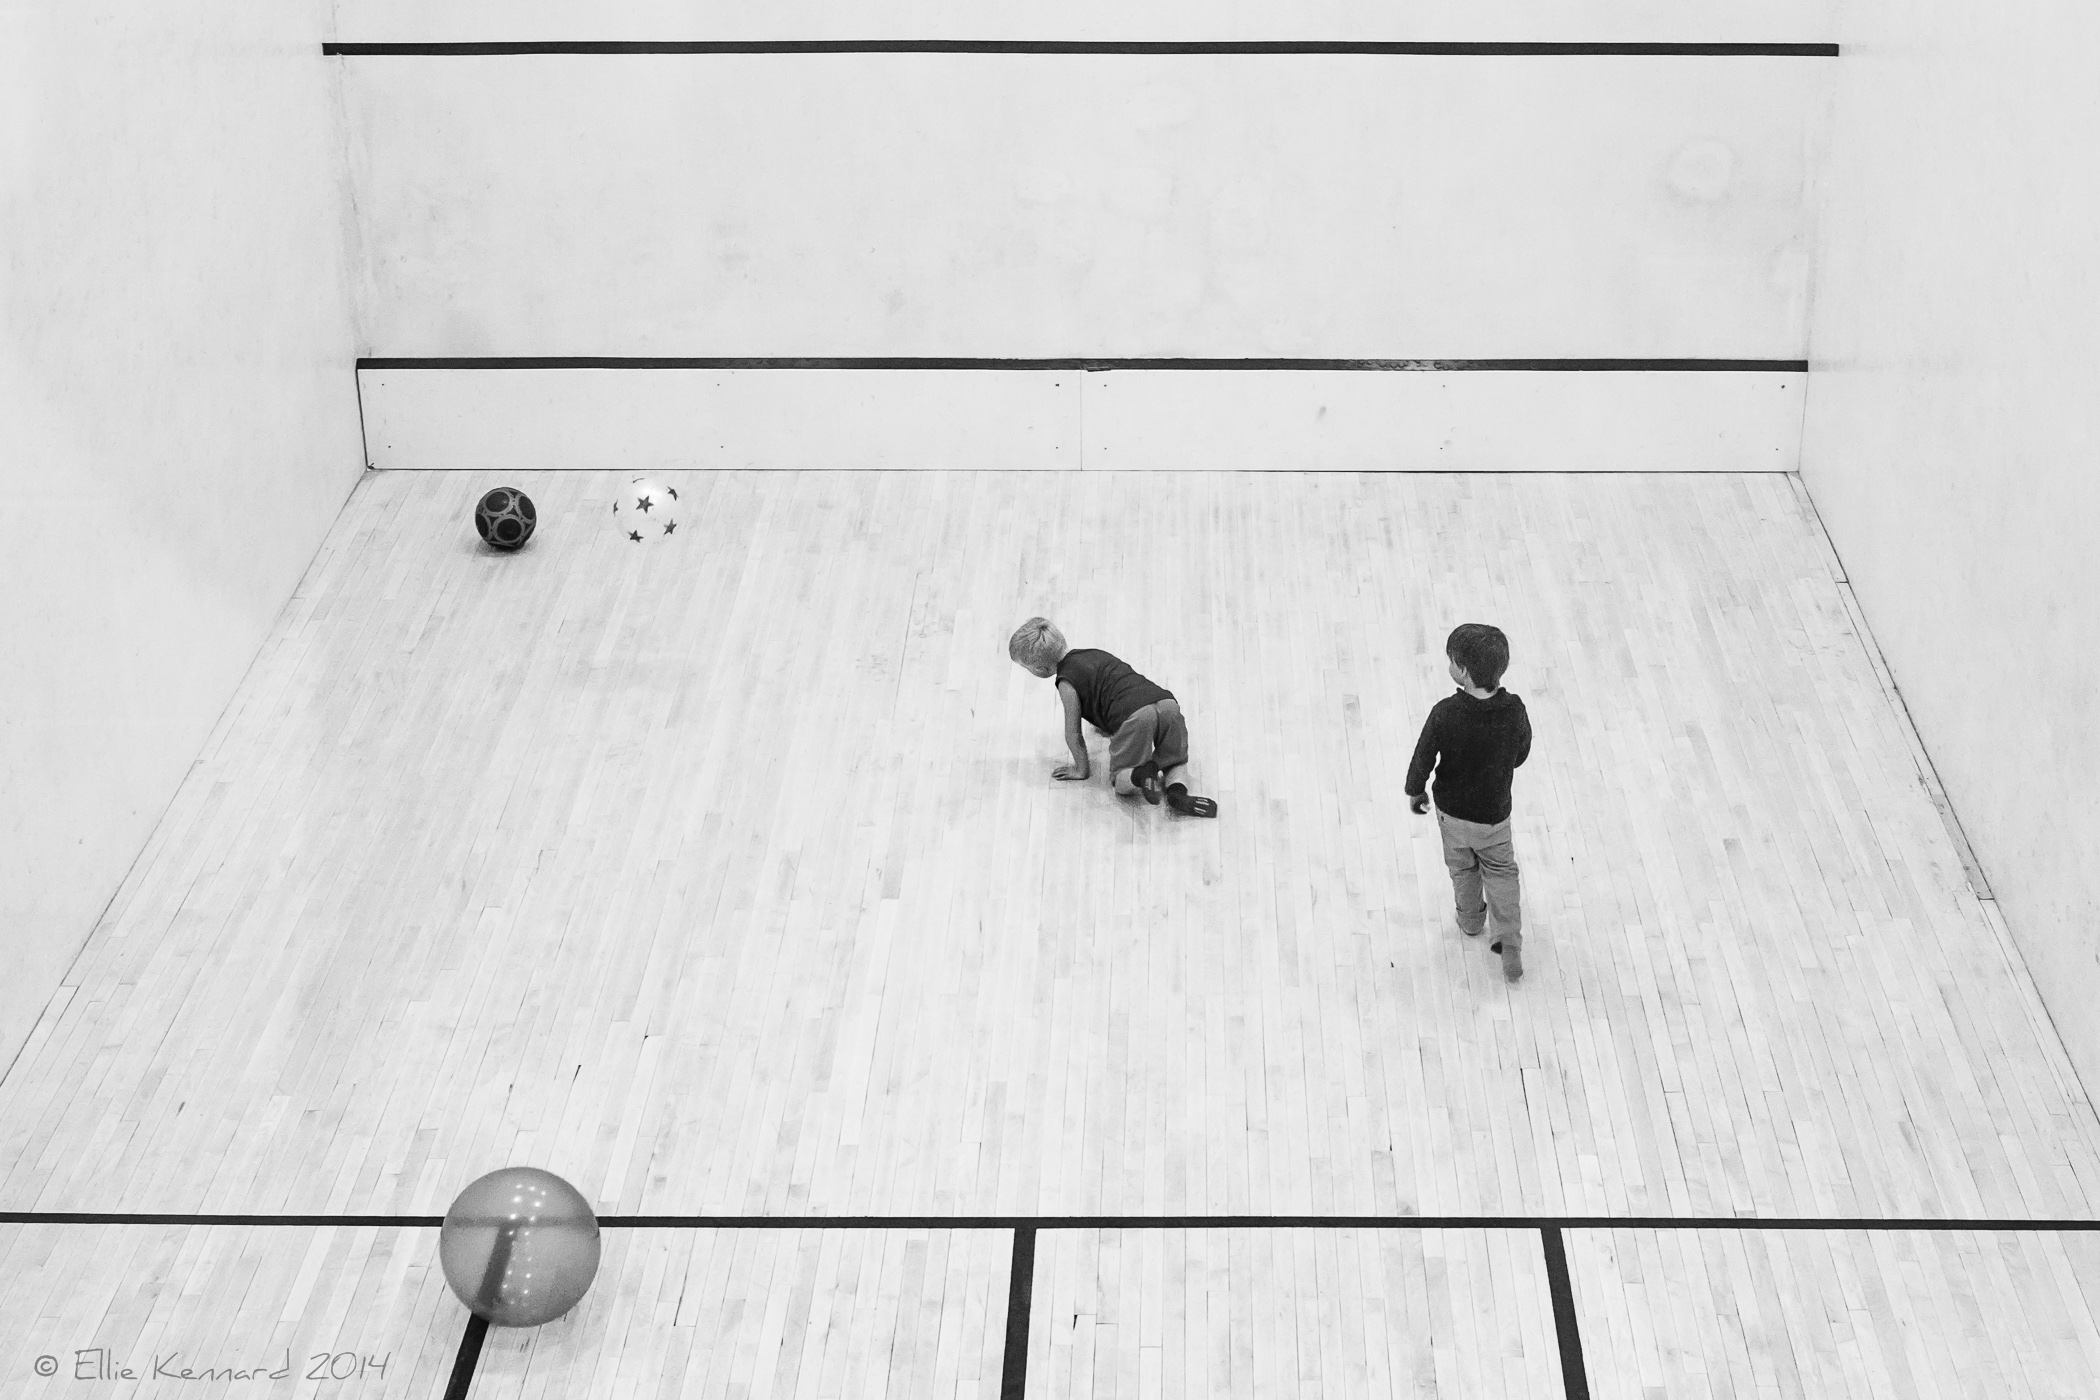 The squash game - Ellie Kennard 2014